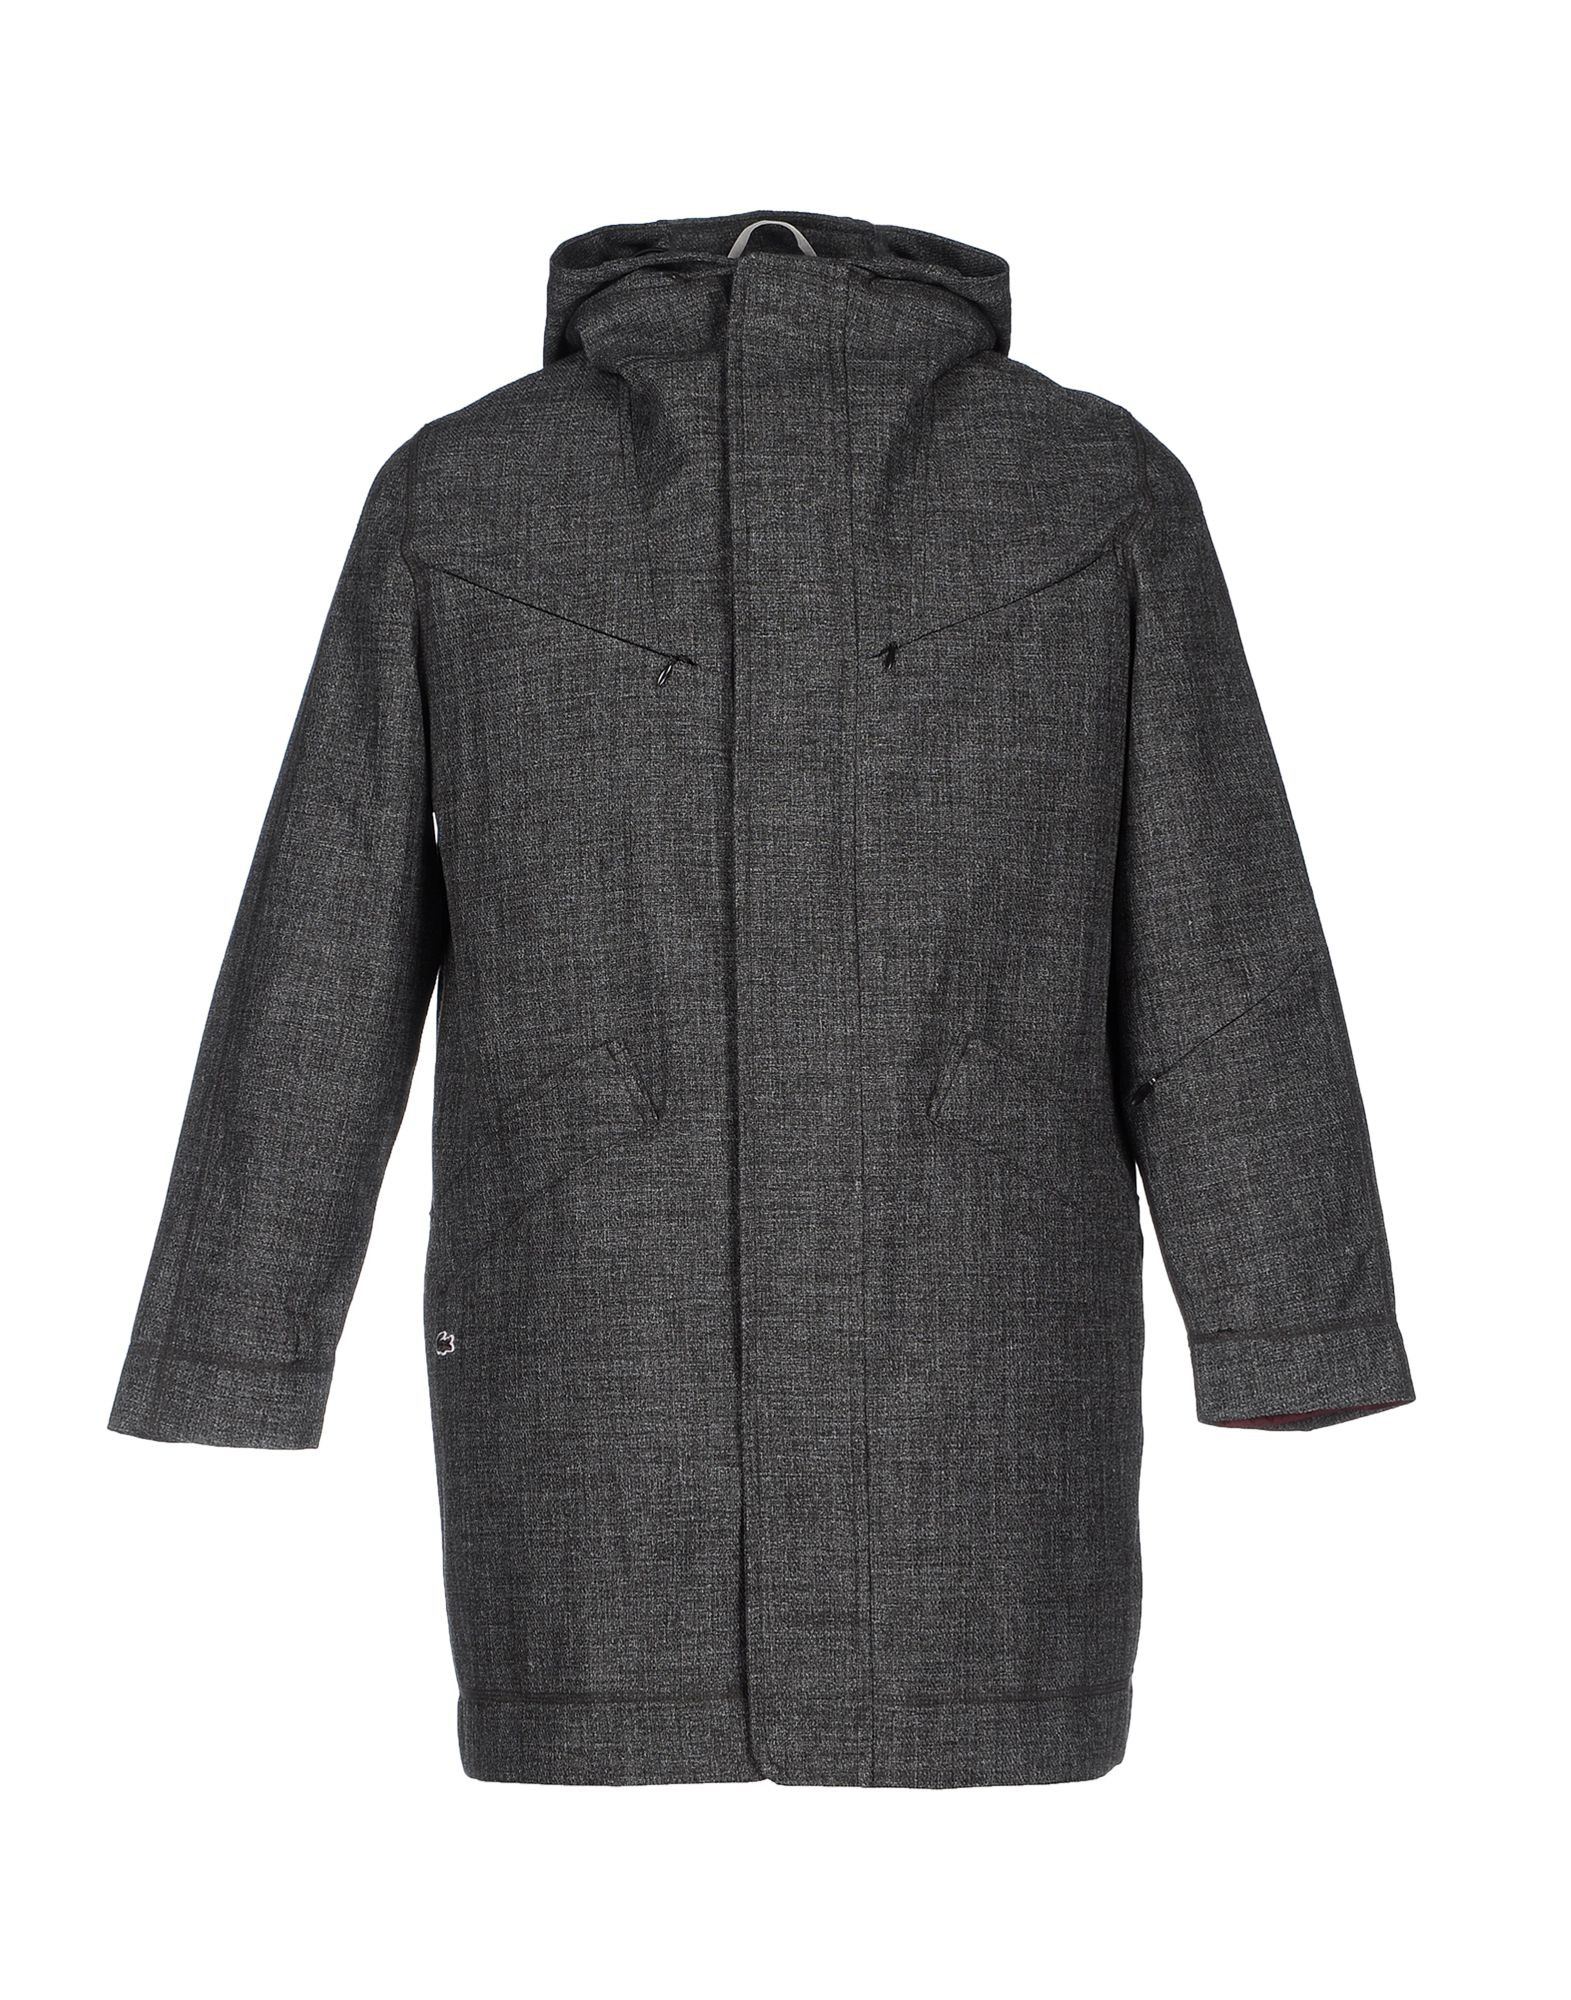 Lyst - Lacoste Jacket in Gray for Men